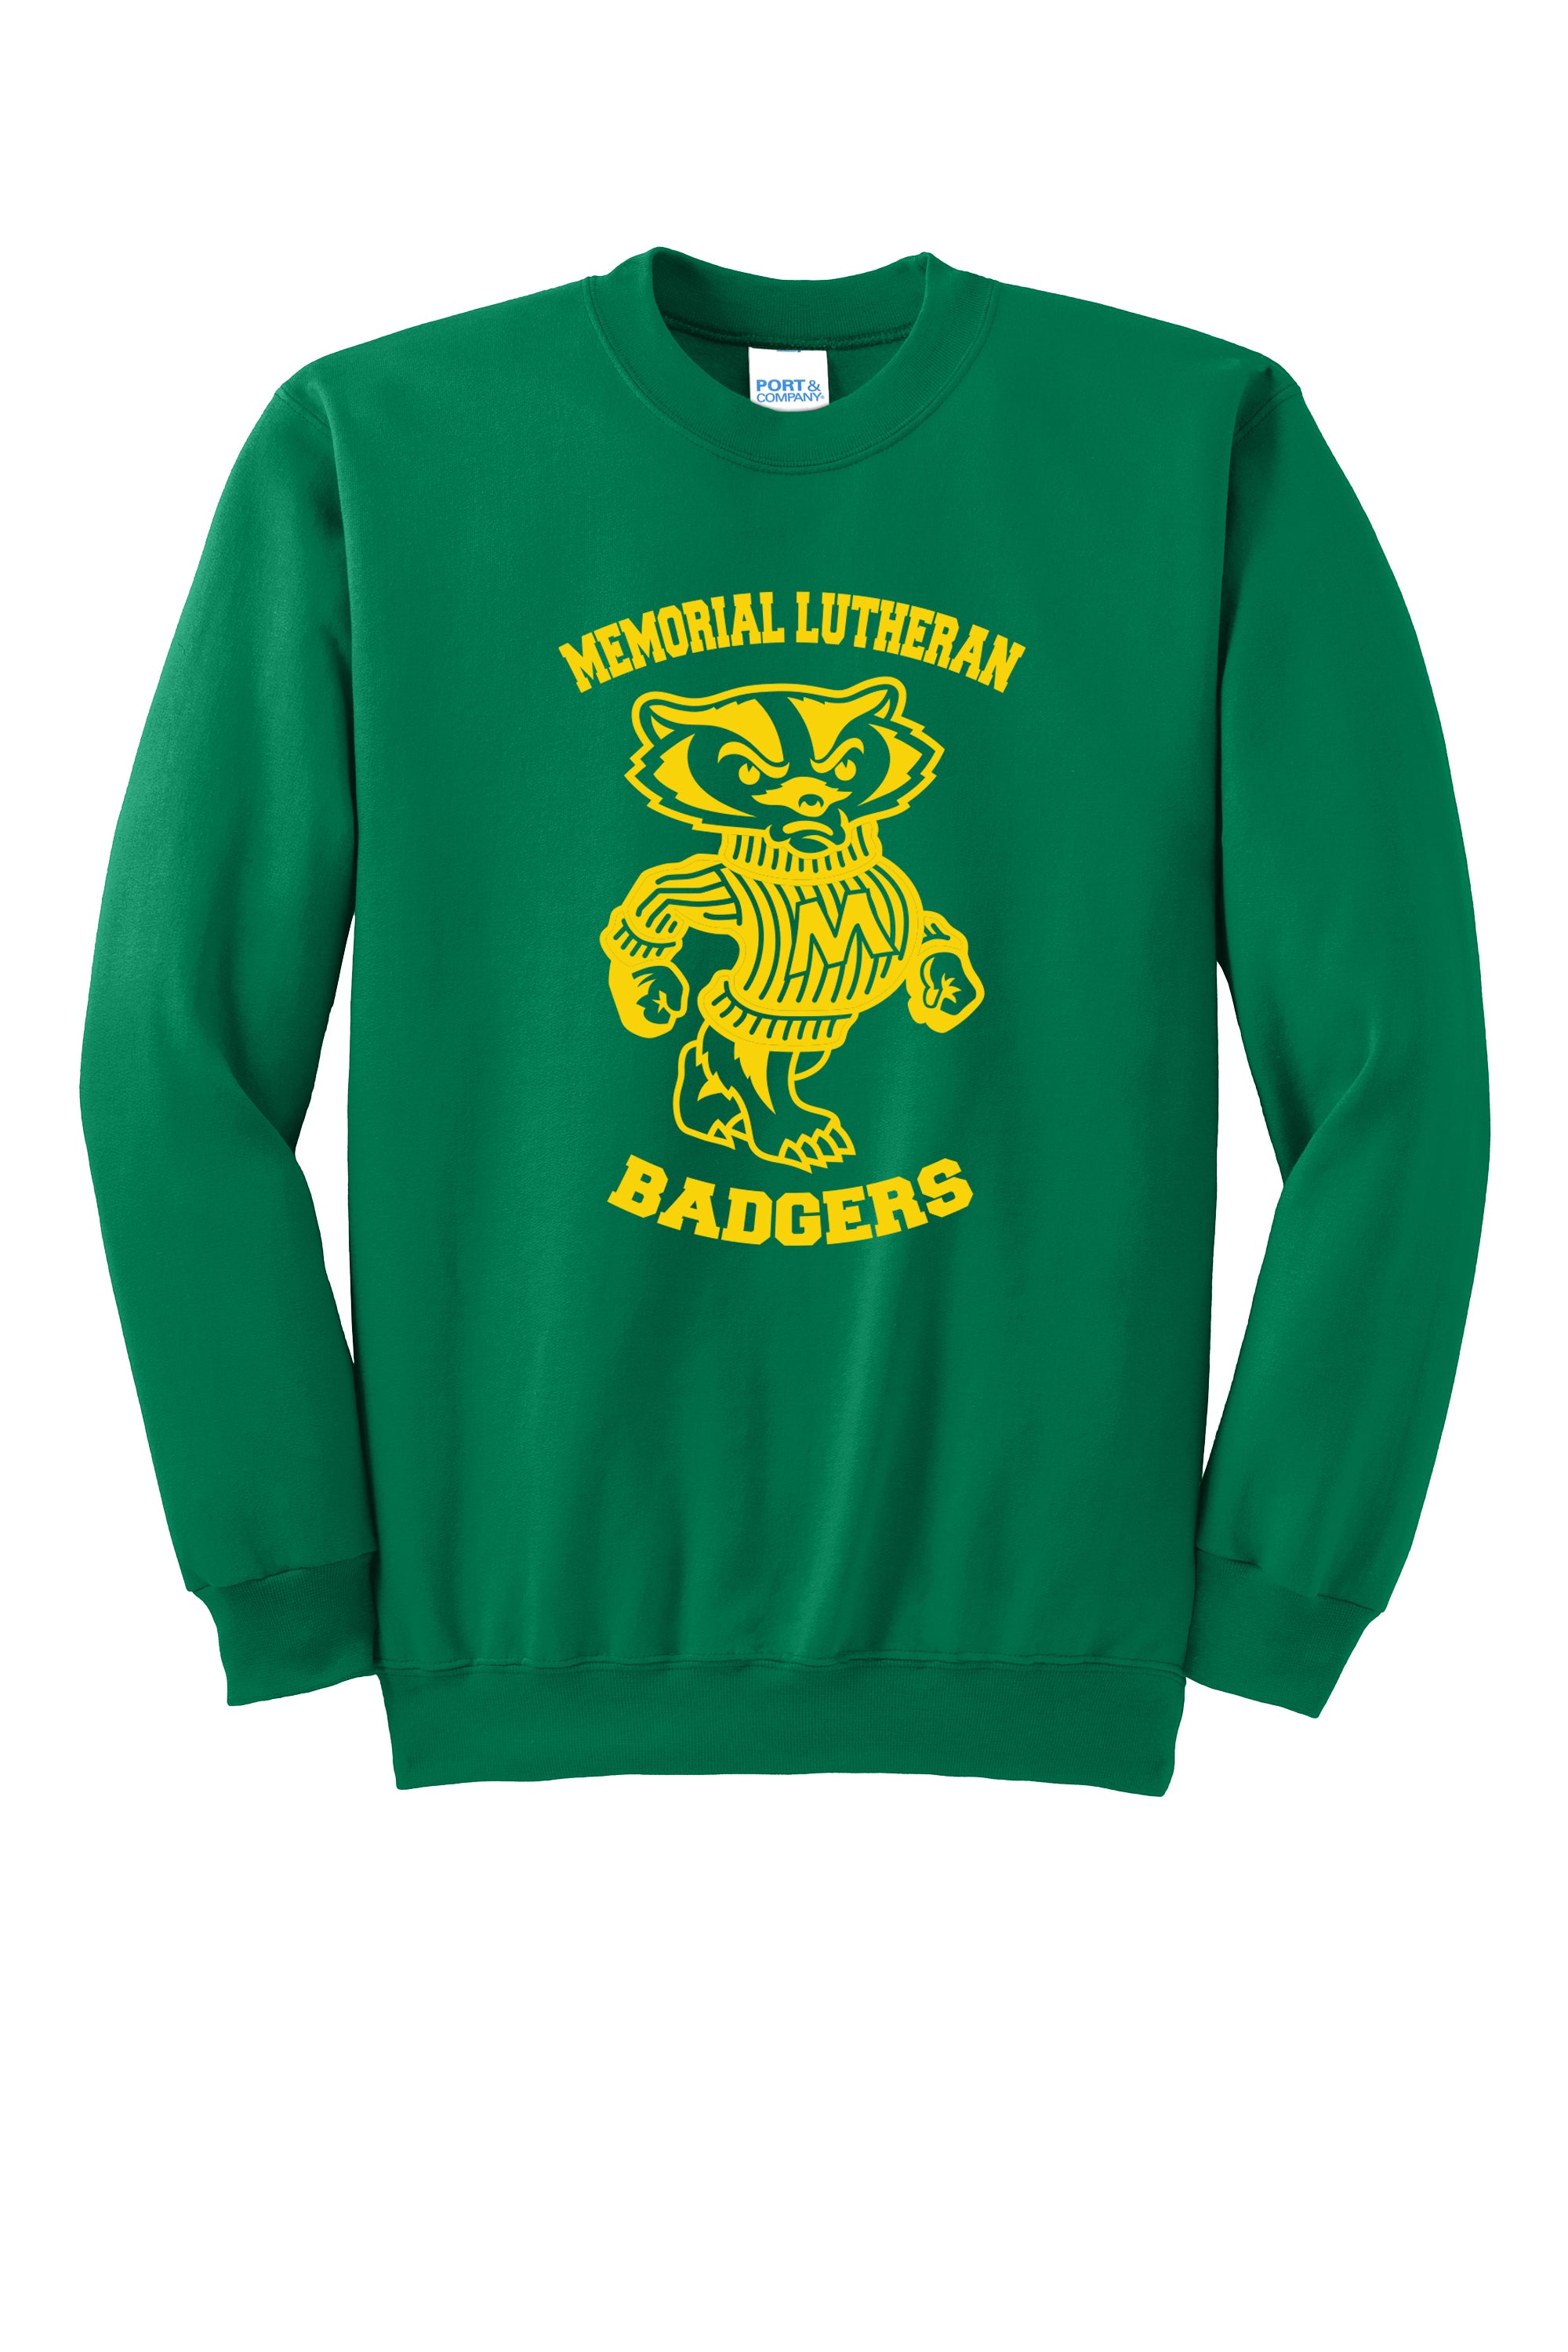 Memorial Lutheran Badgers  - Sweatshirt